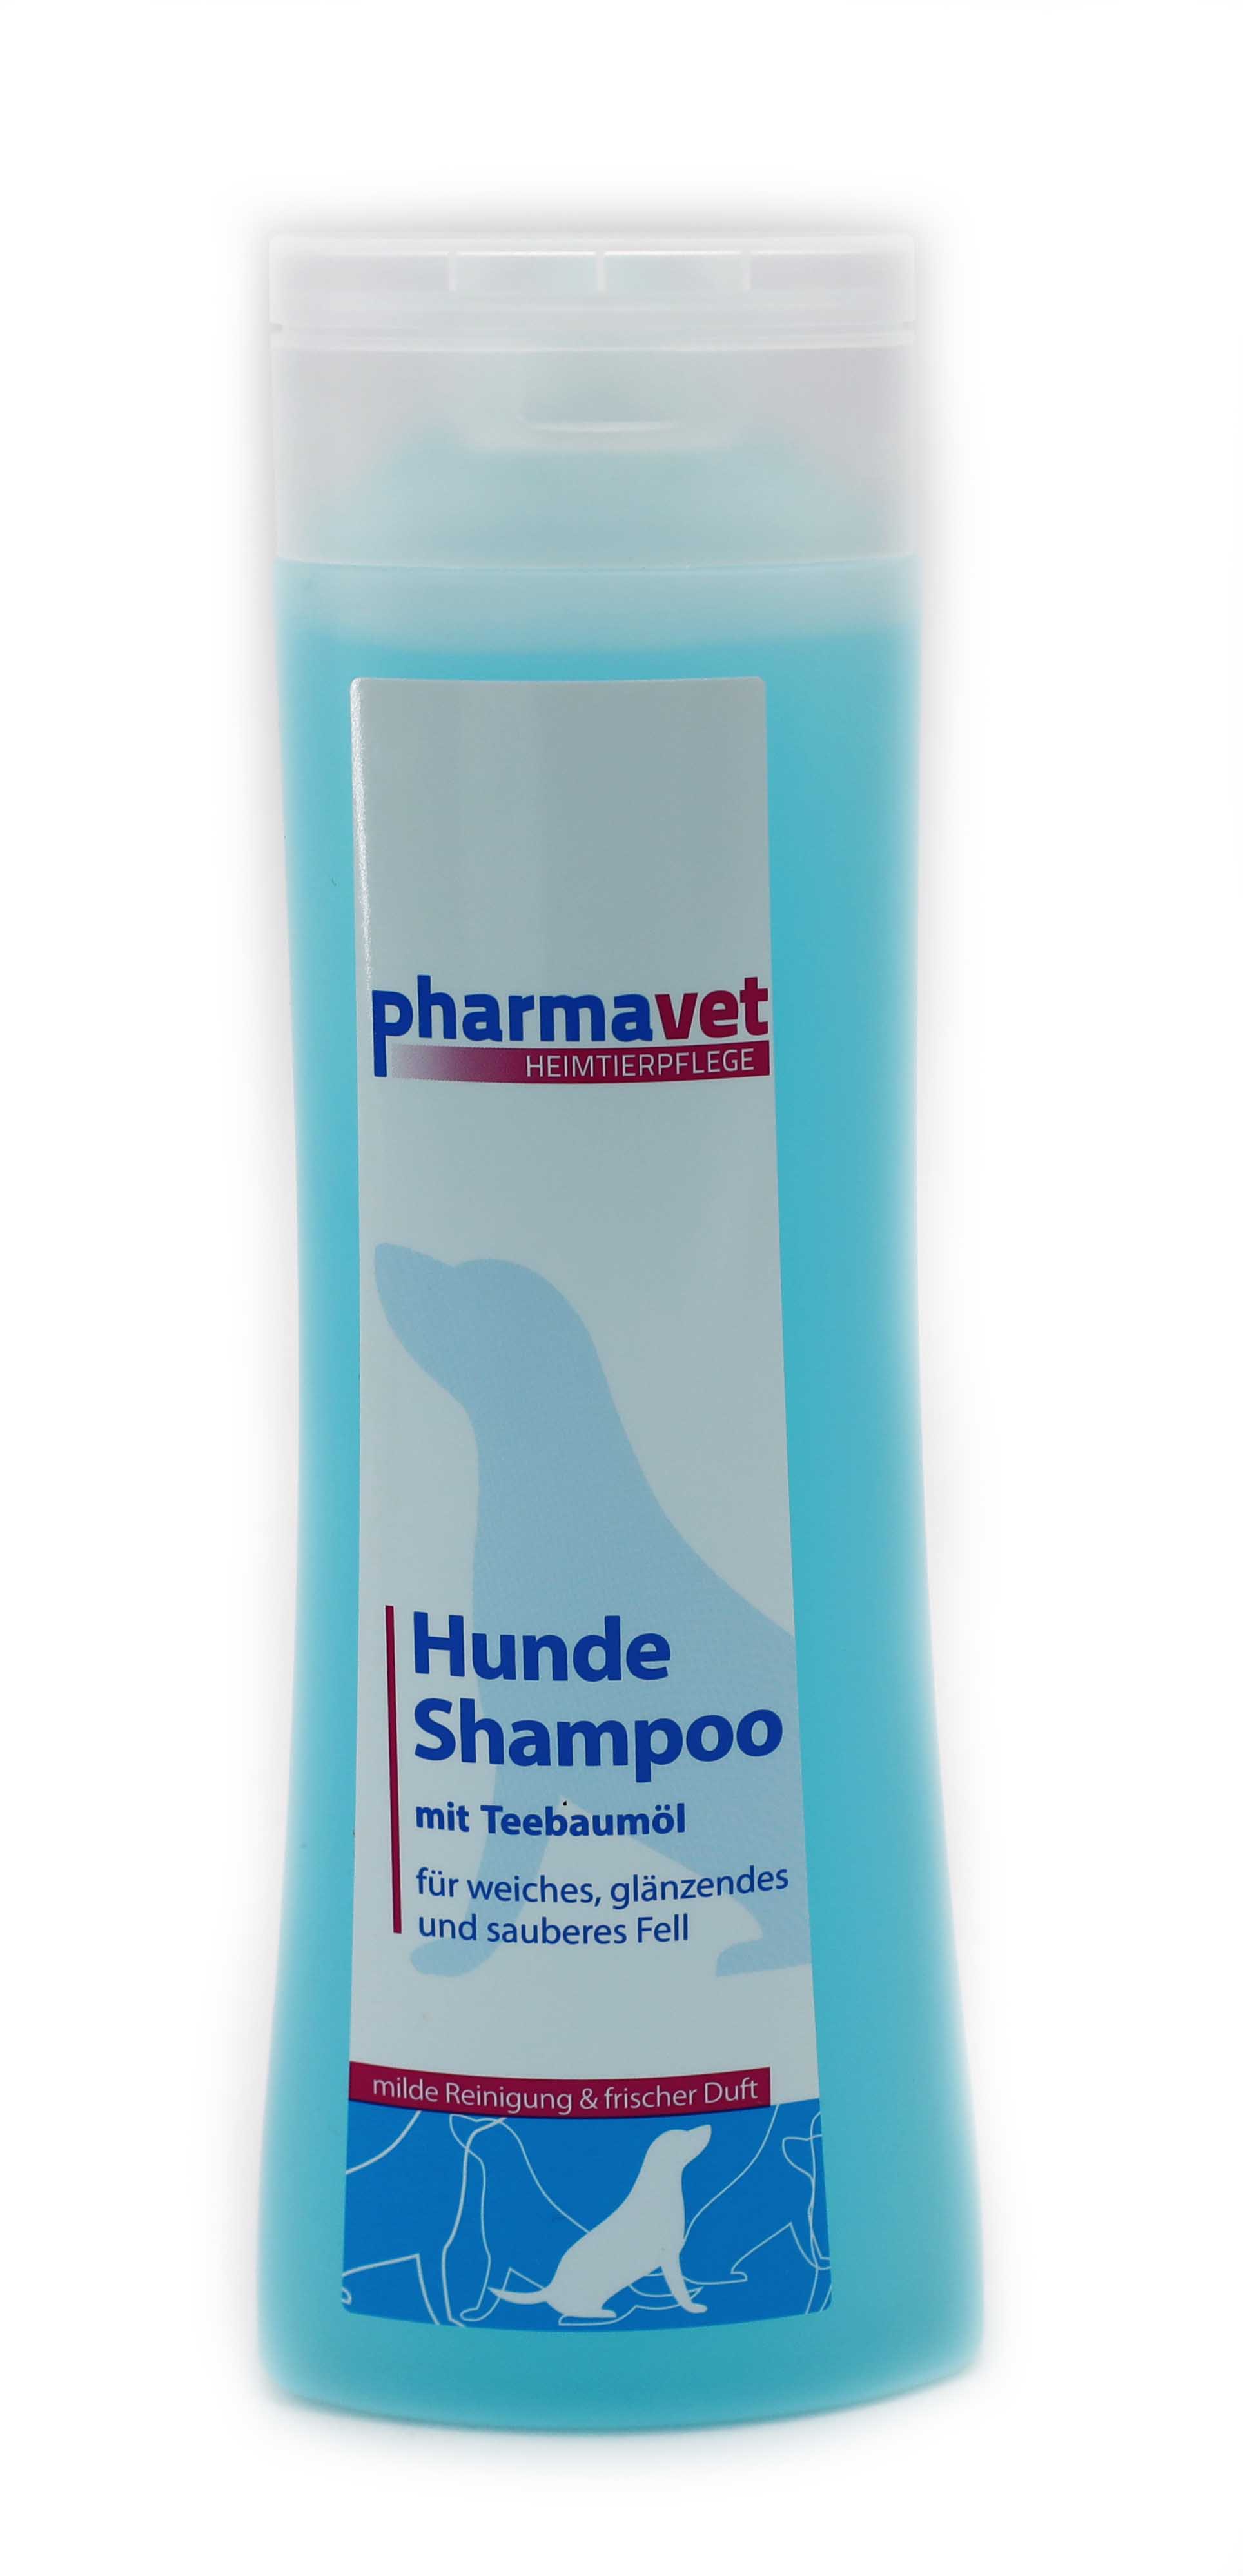 Hundeshampoo 300ml - pharmavet